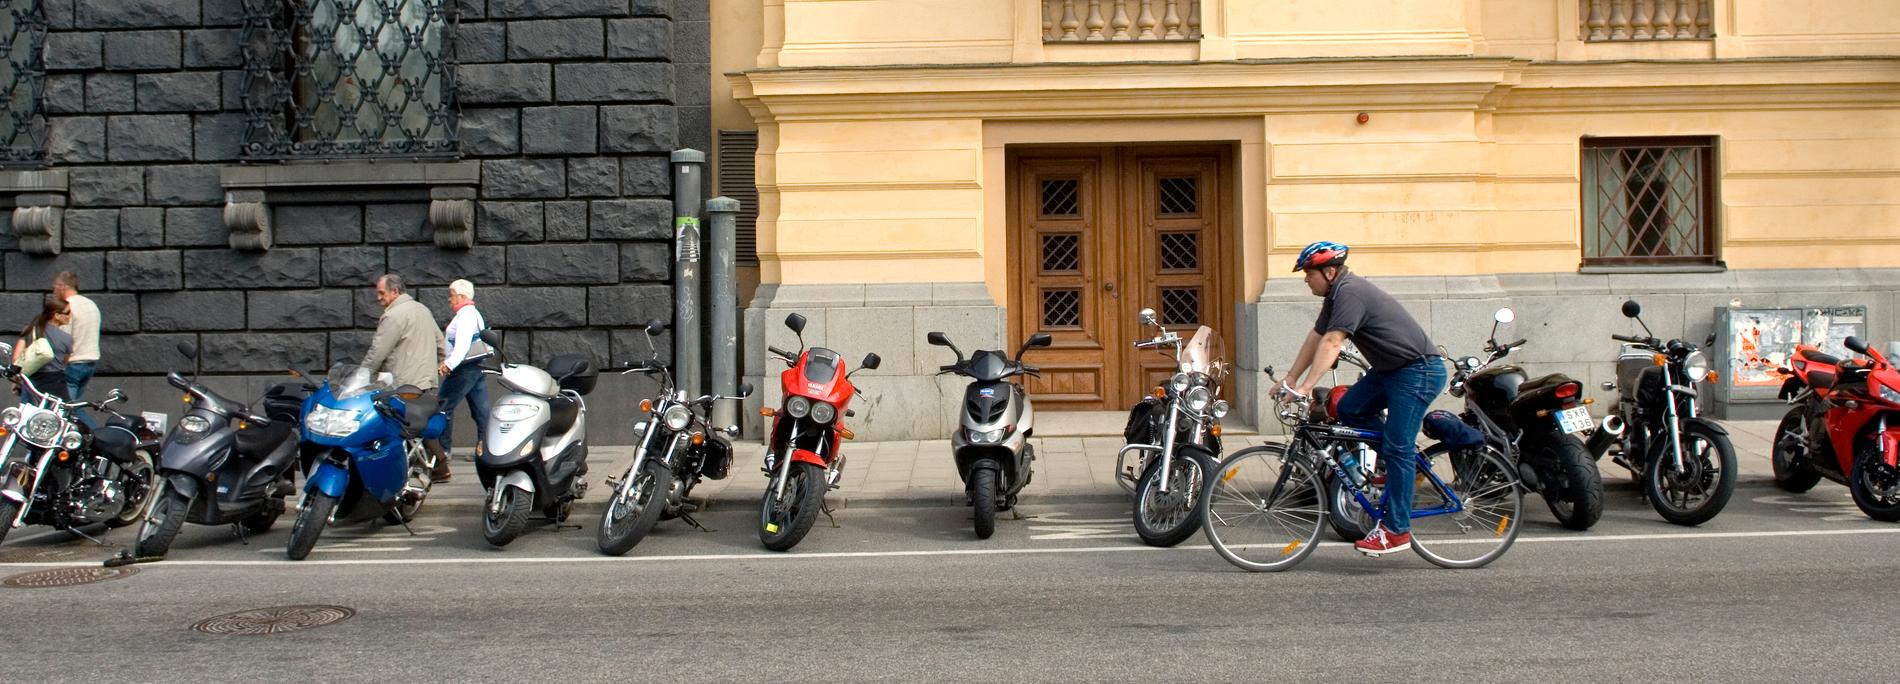 Motorcykelparkering på Kungsträdgårdsgatan. Arkivbild.